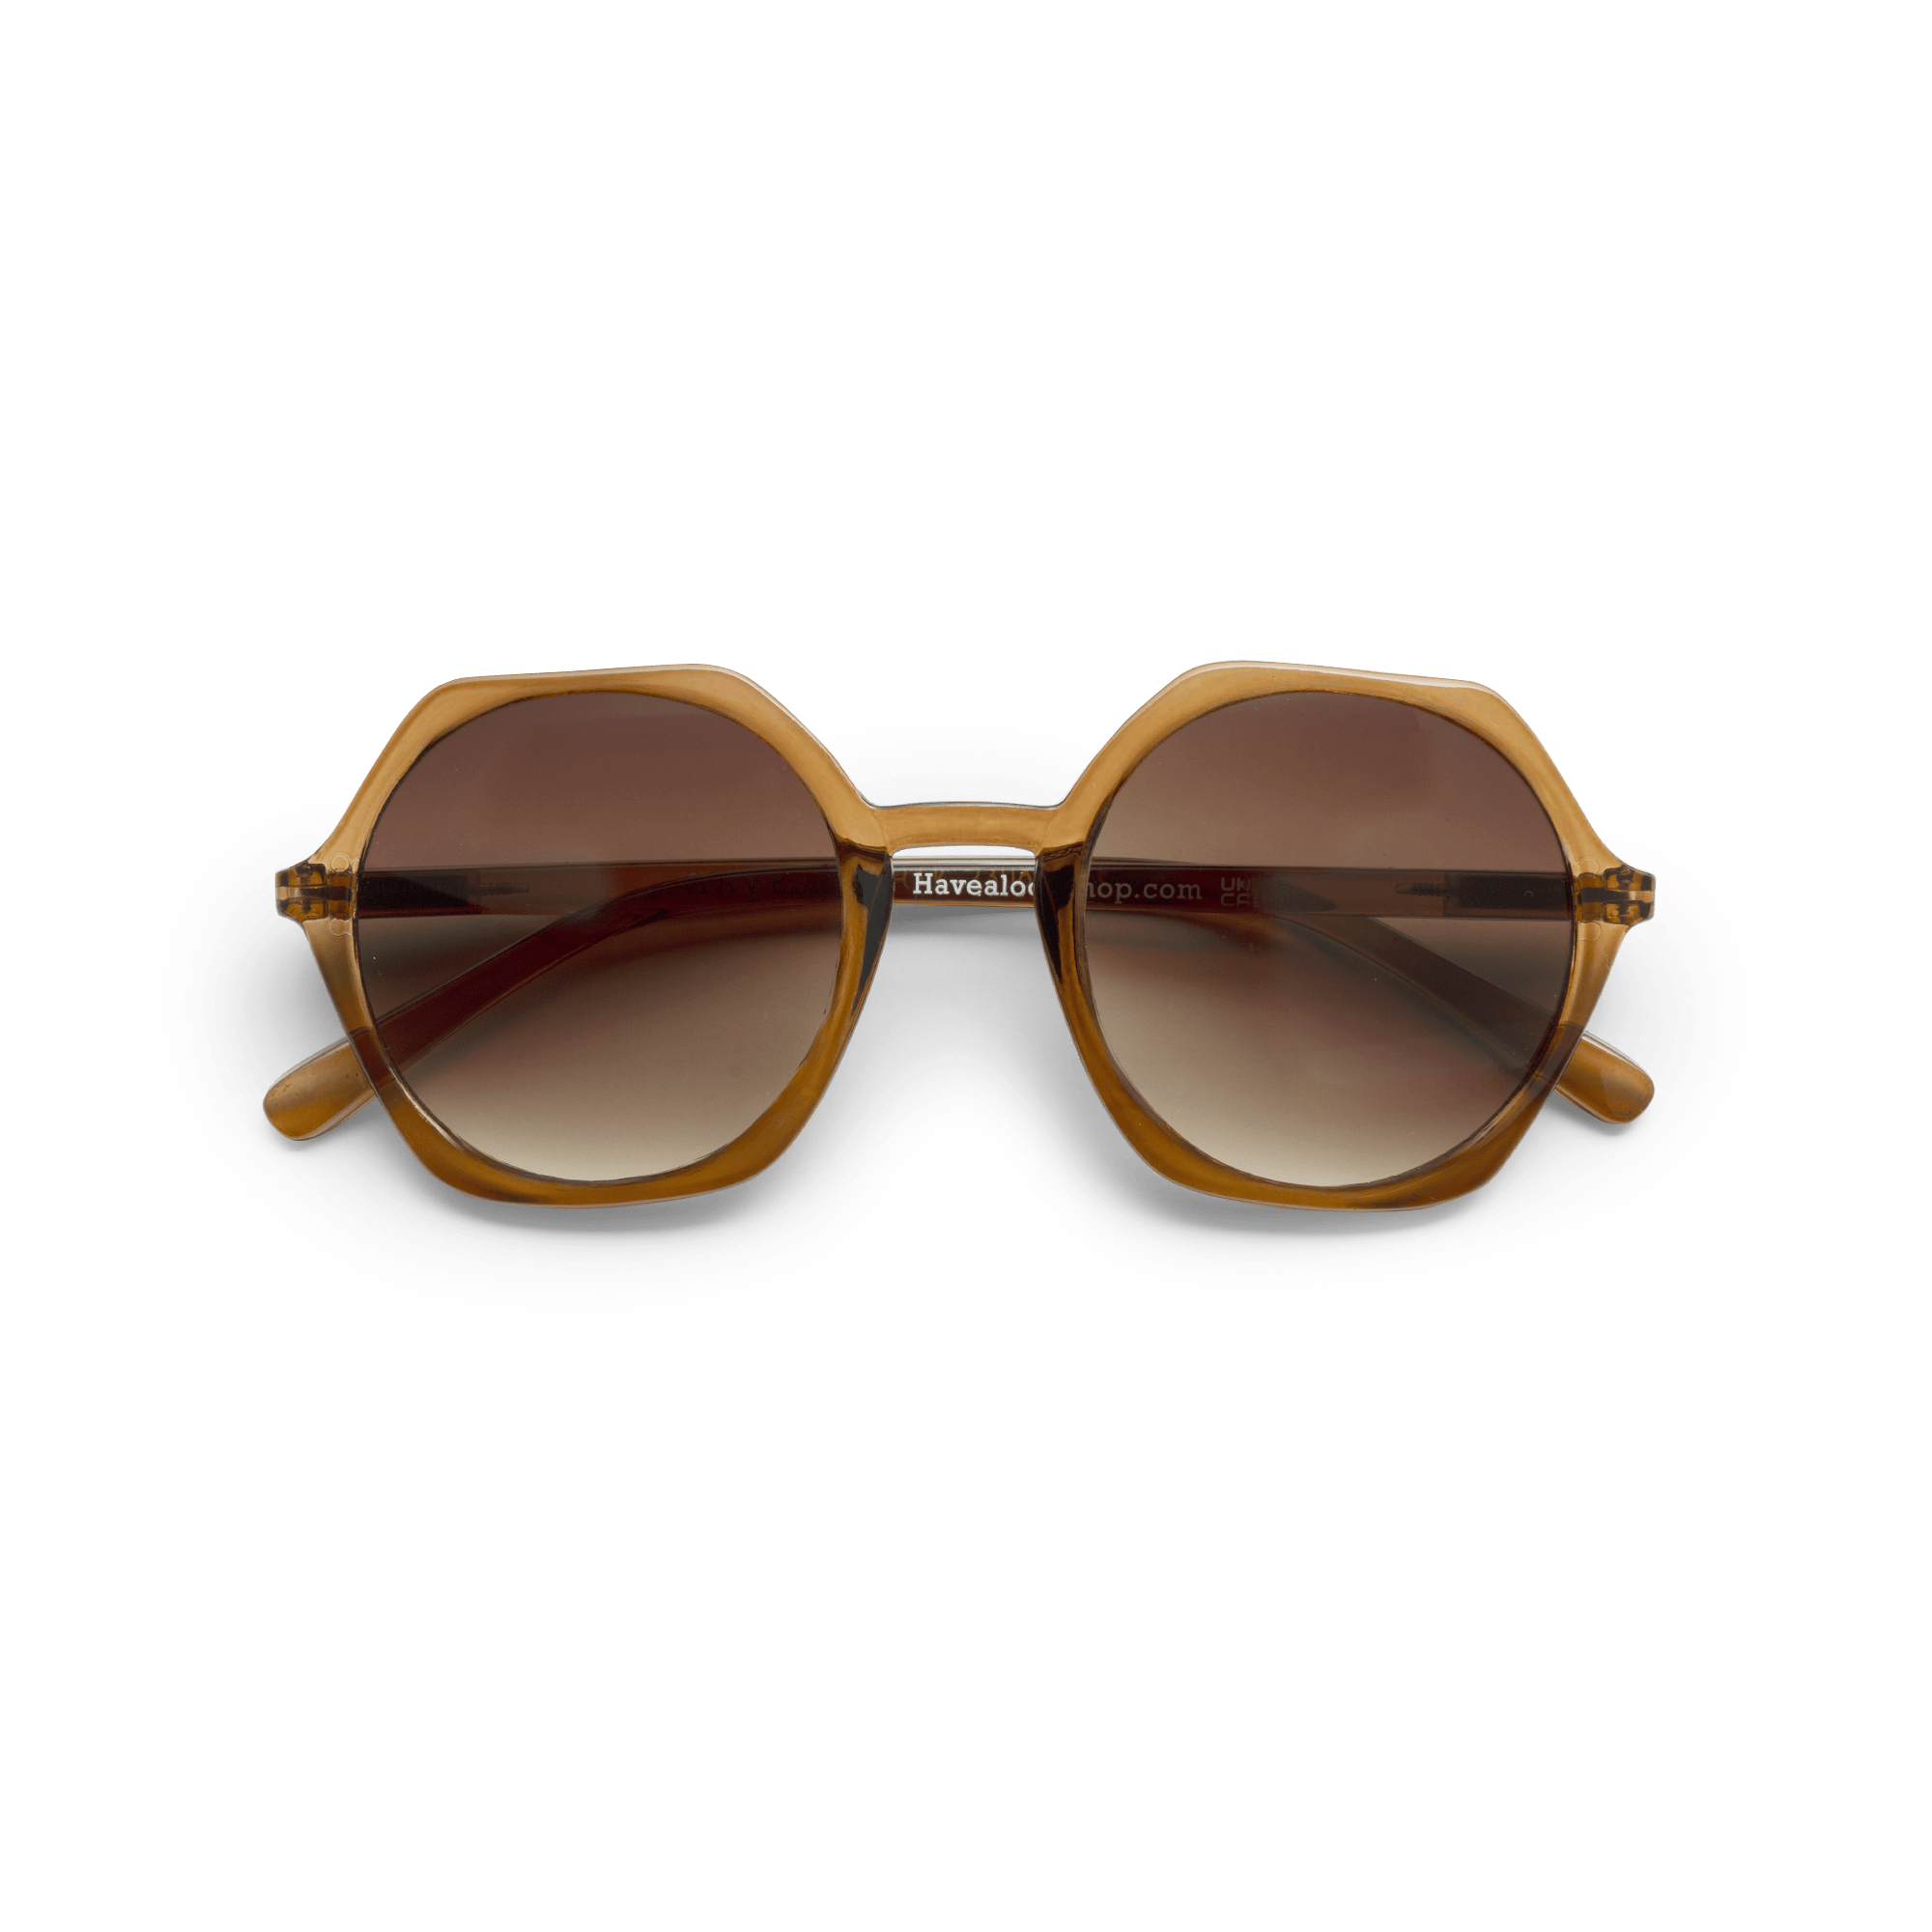 Sonnenfernbrillen Edgy - brown aus Have A Look